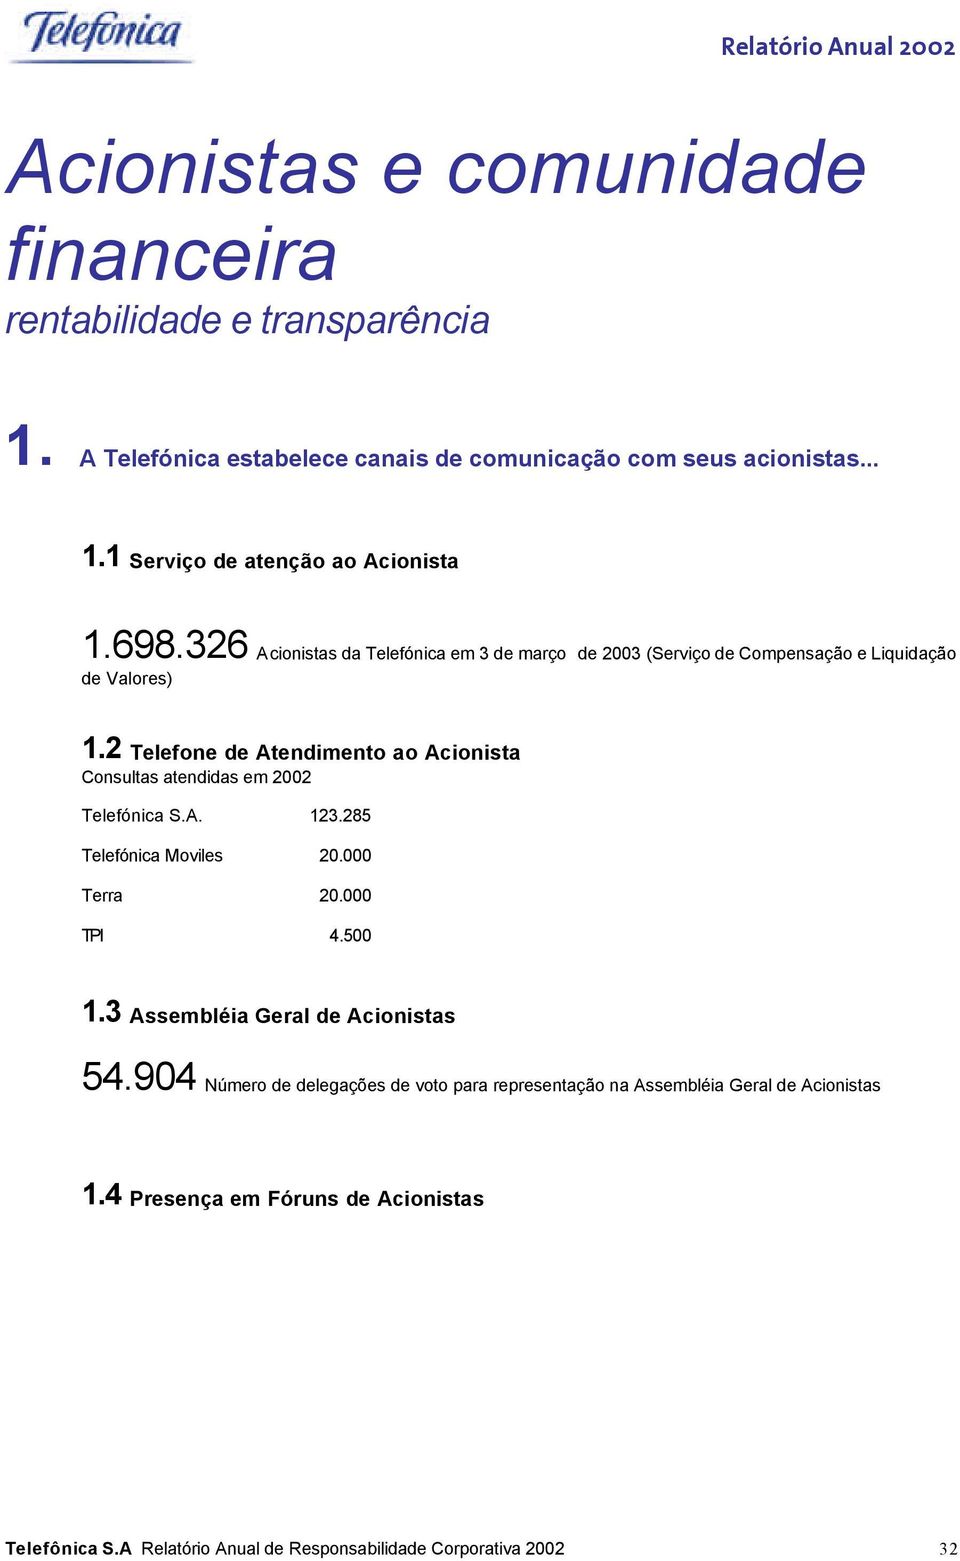 2 Telefone de Atendimento ao Acionista Consultas atendidas em 2002 Telefónica S.A. 123.285 Telefónica Moviles 20.000 Terra 20.000 TPI 4.500 1.